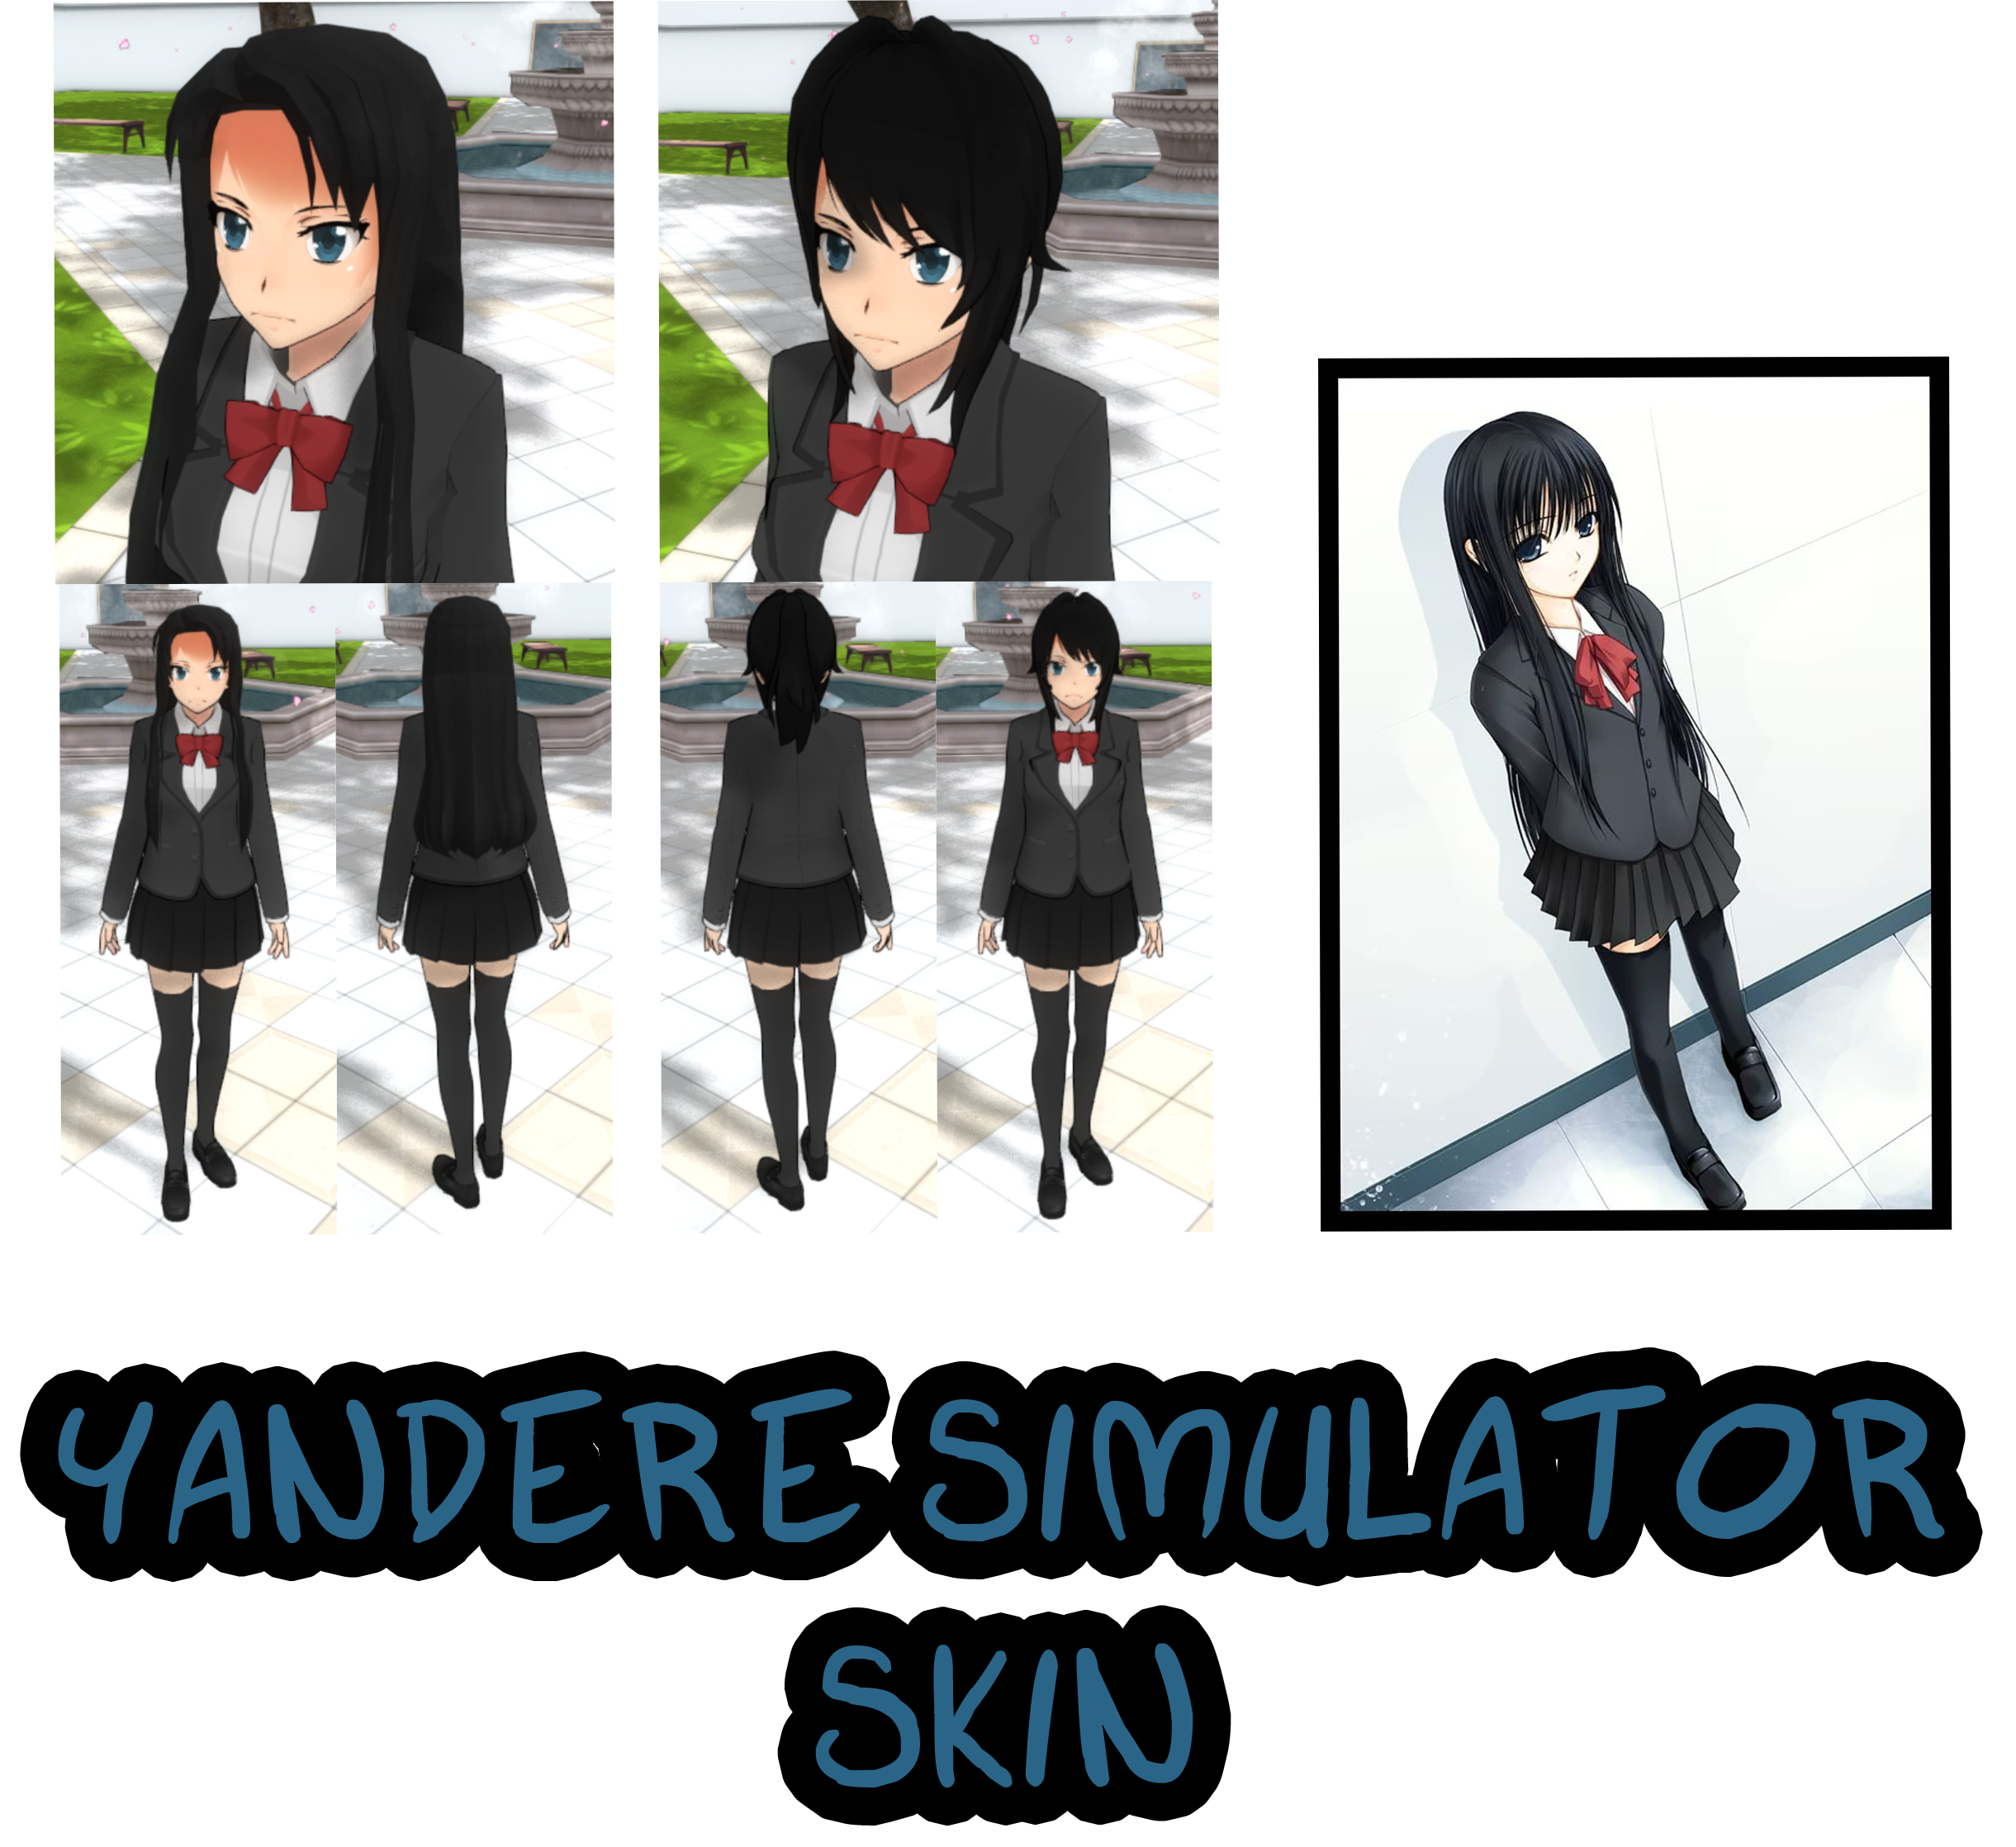 Yandere simulator animations. Яндере симулятор текстуры лица. Текстуры Яндере симулятор.